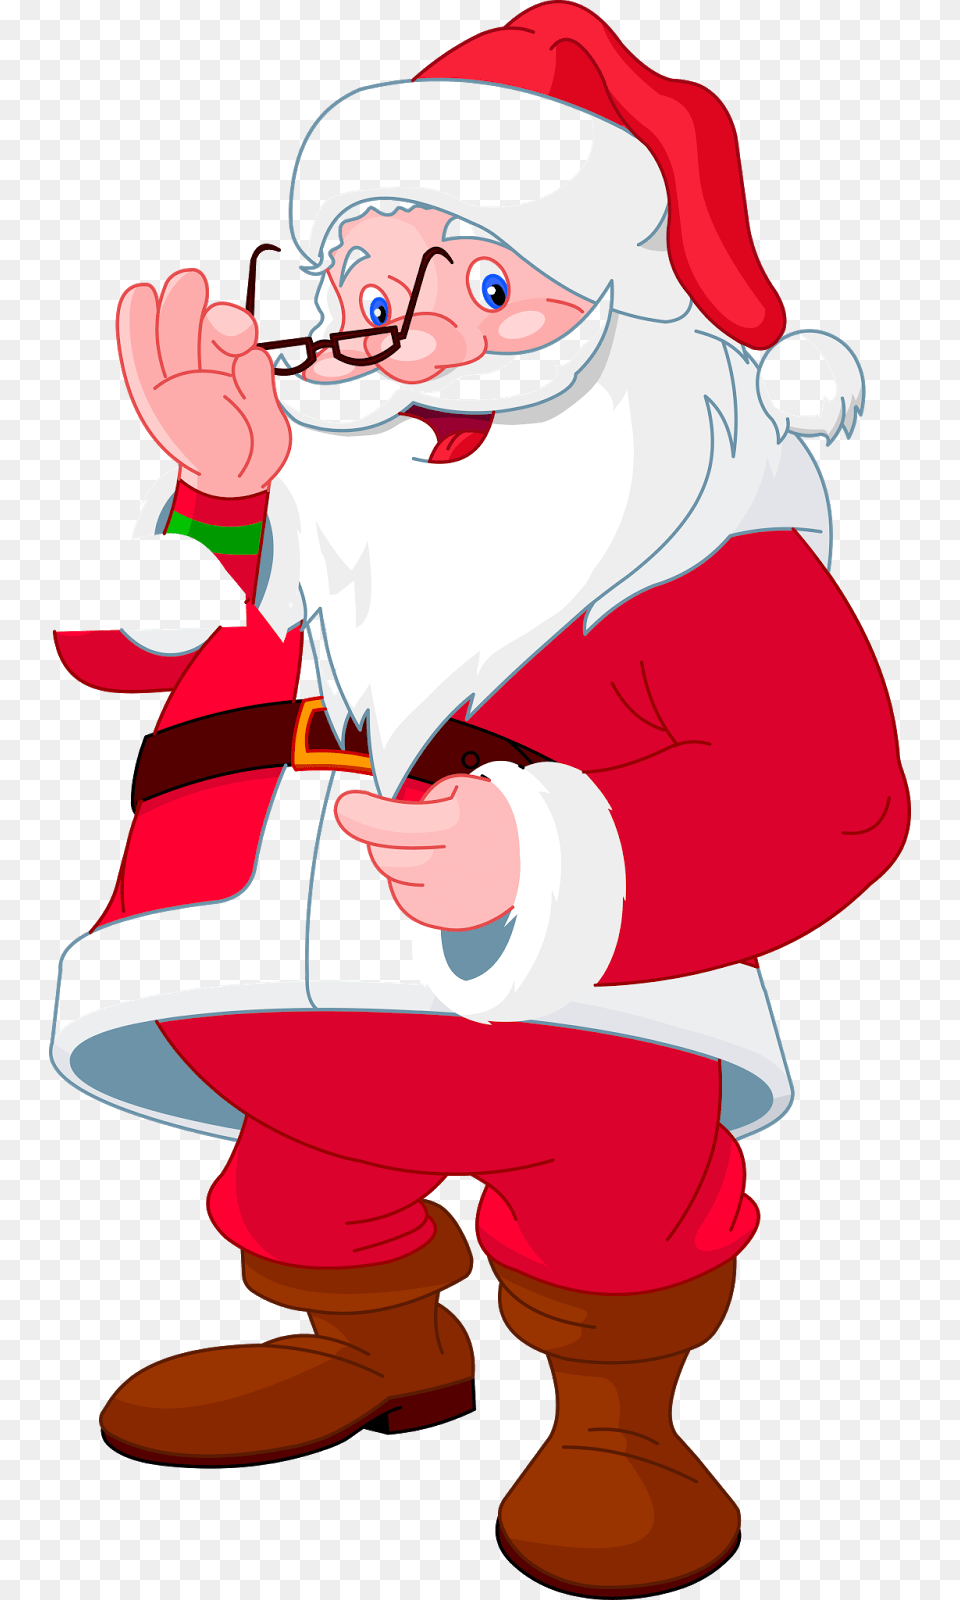 Imagenes En Formato Gratis Background Santa Clip Art, Baby, Person, Cartoon, Elf Free Png